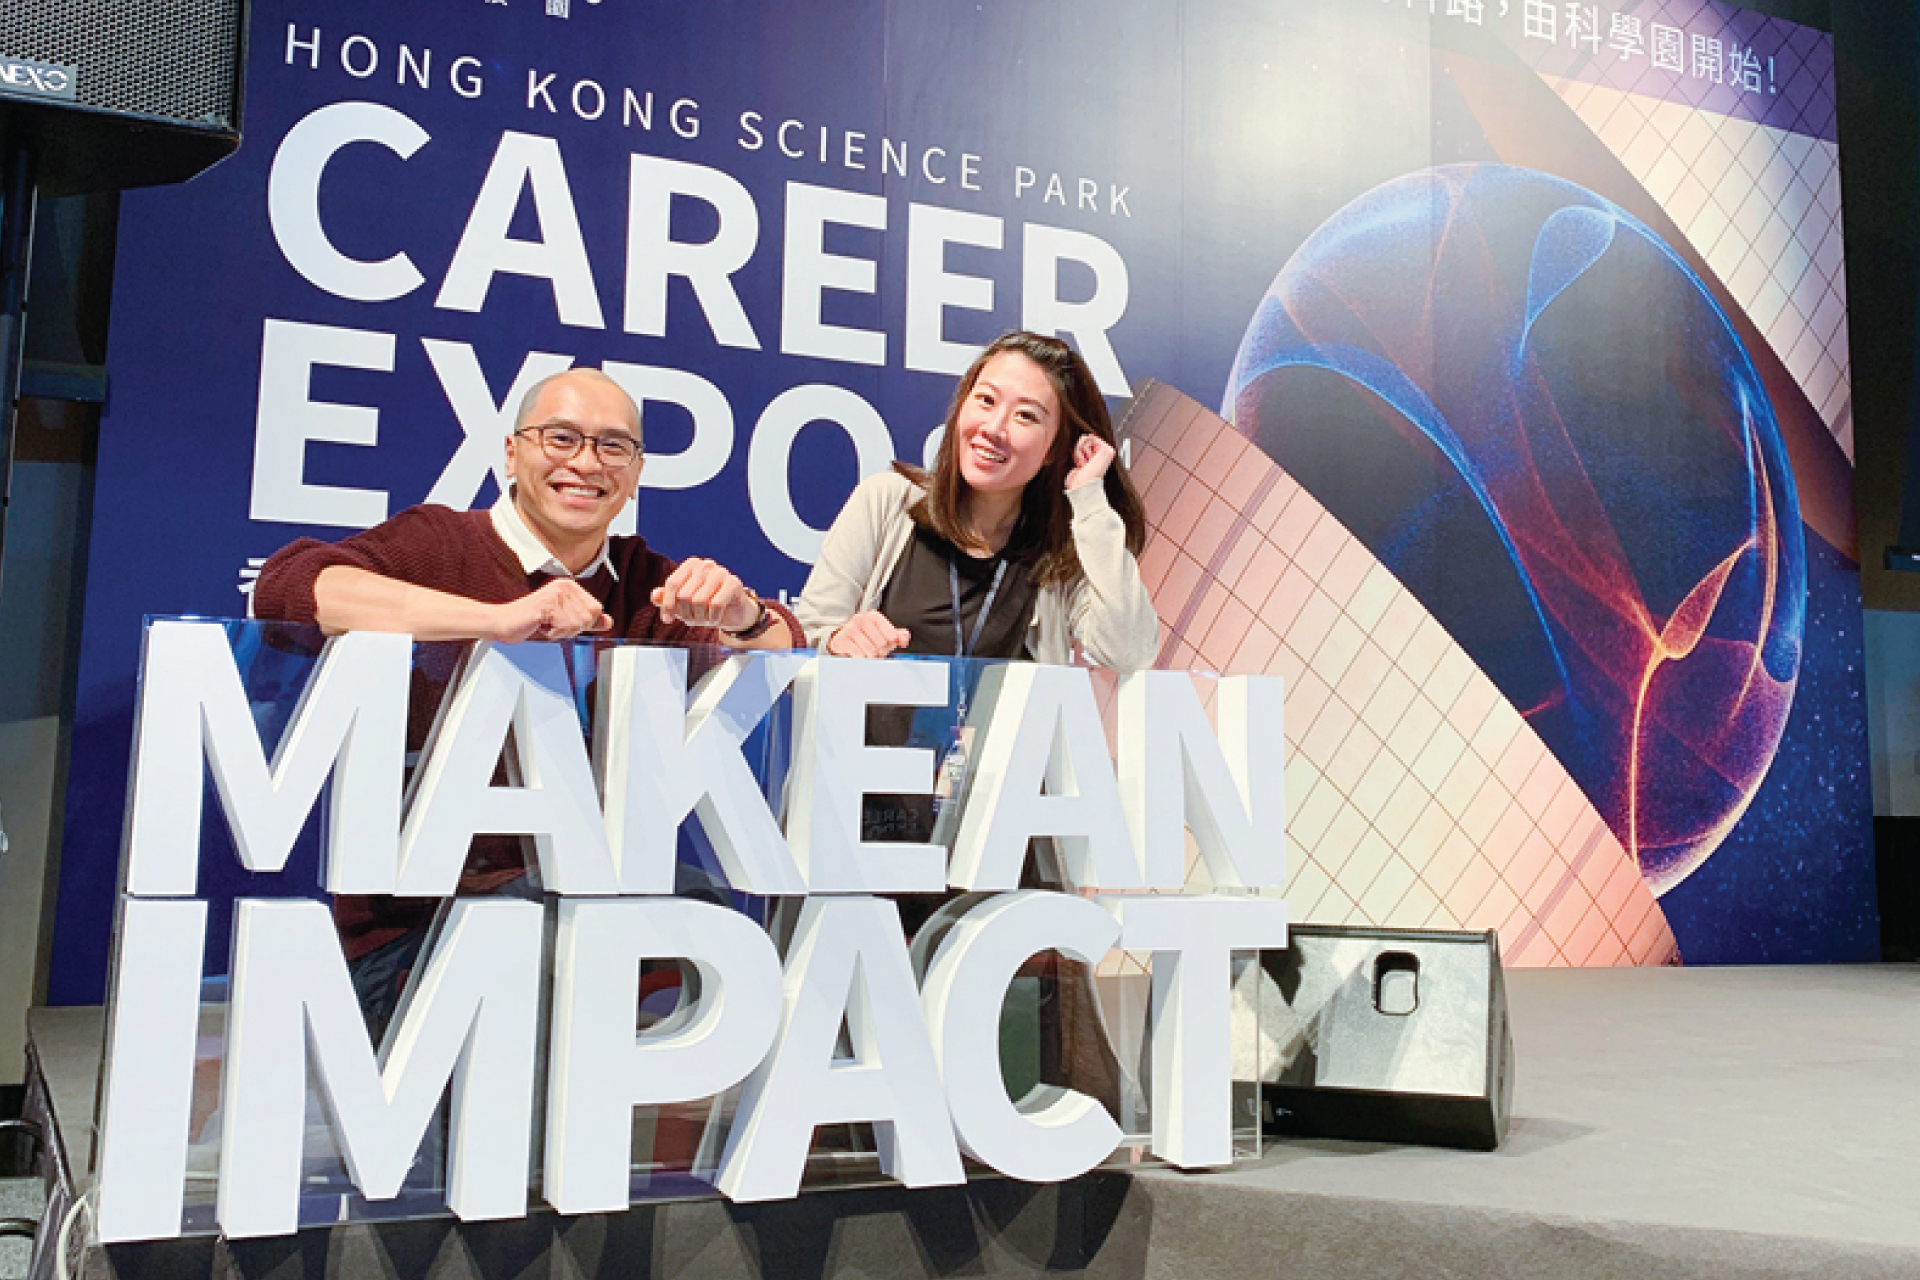 Hong Kong Science Park Career Expo, 2019